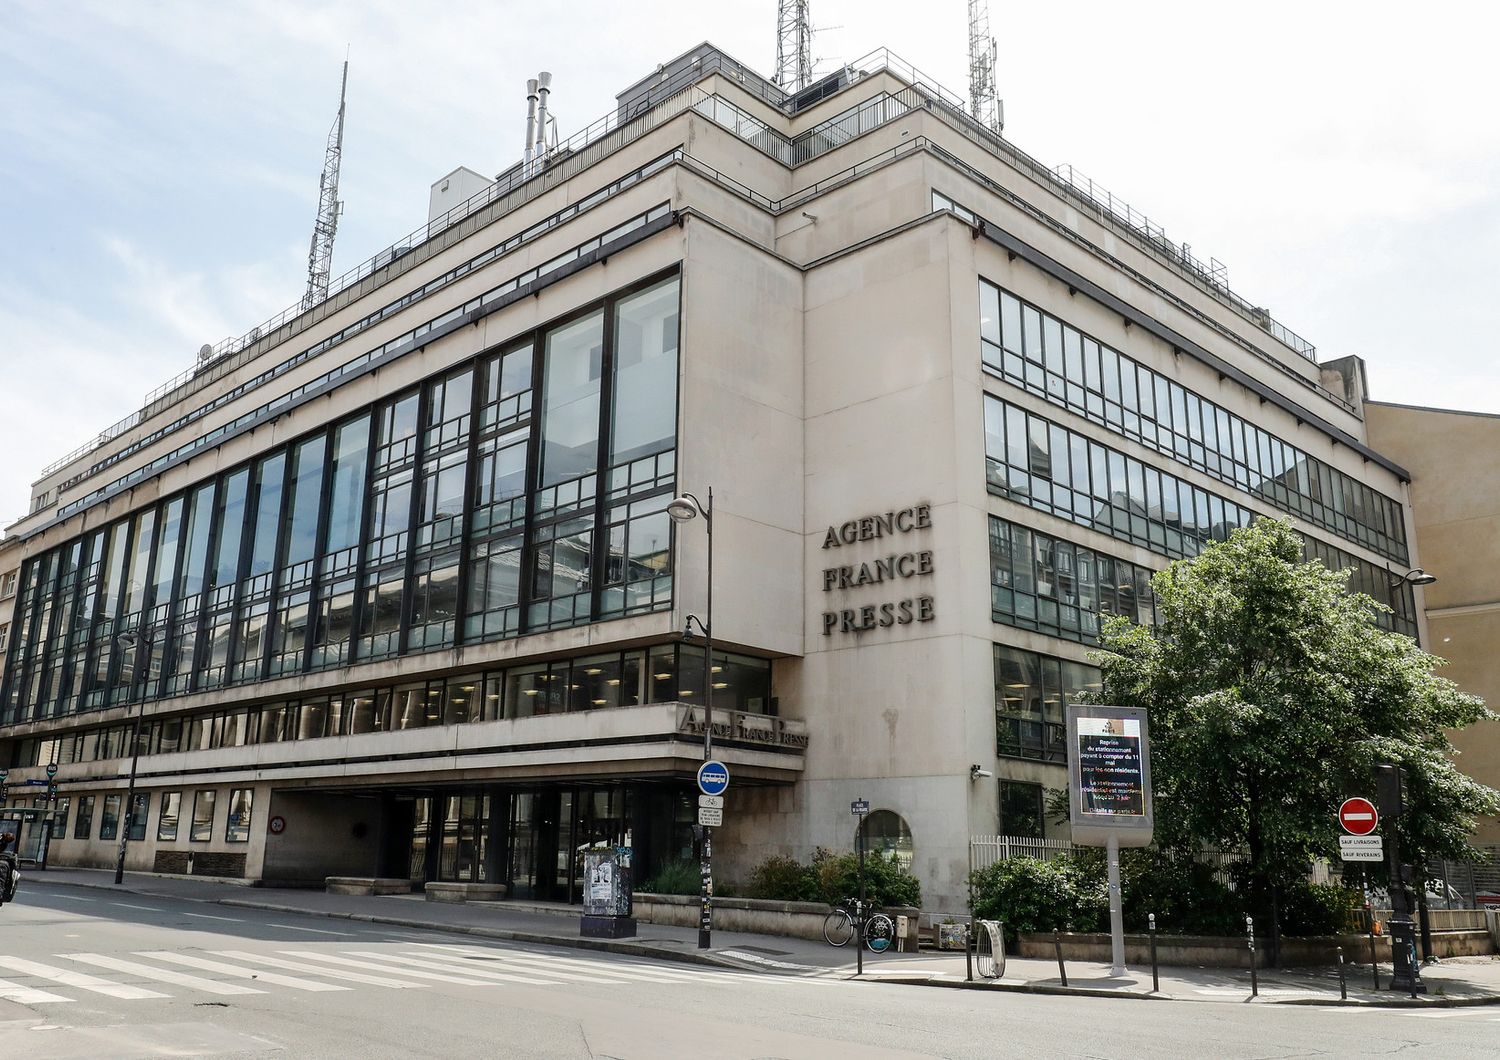 Il quartier generale dell'agenzia France Presse a Parigi